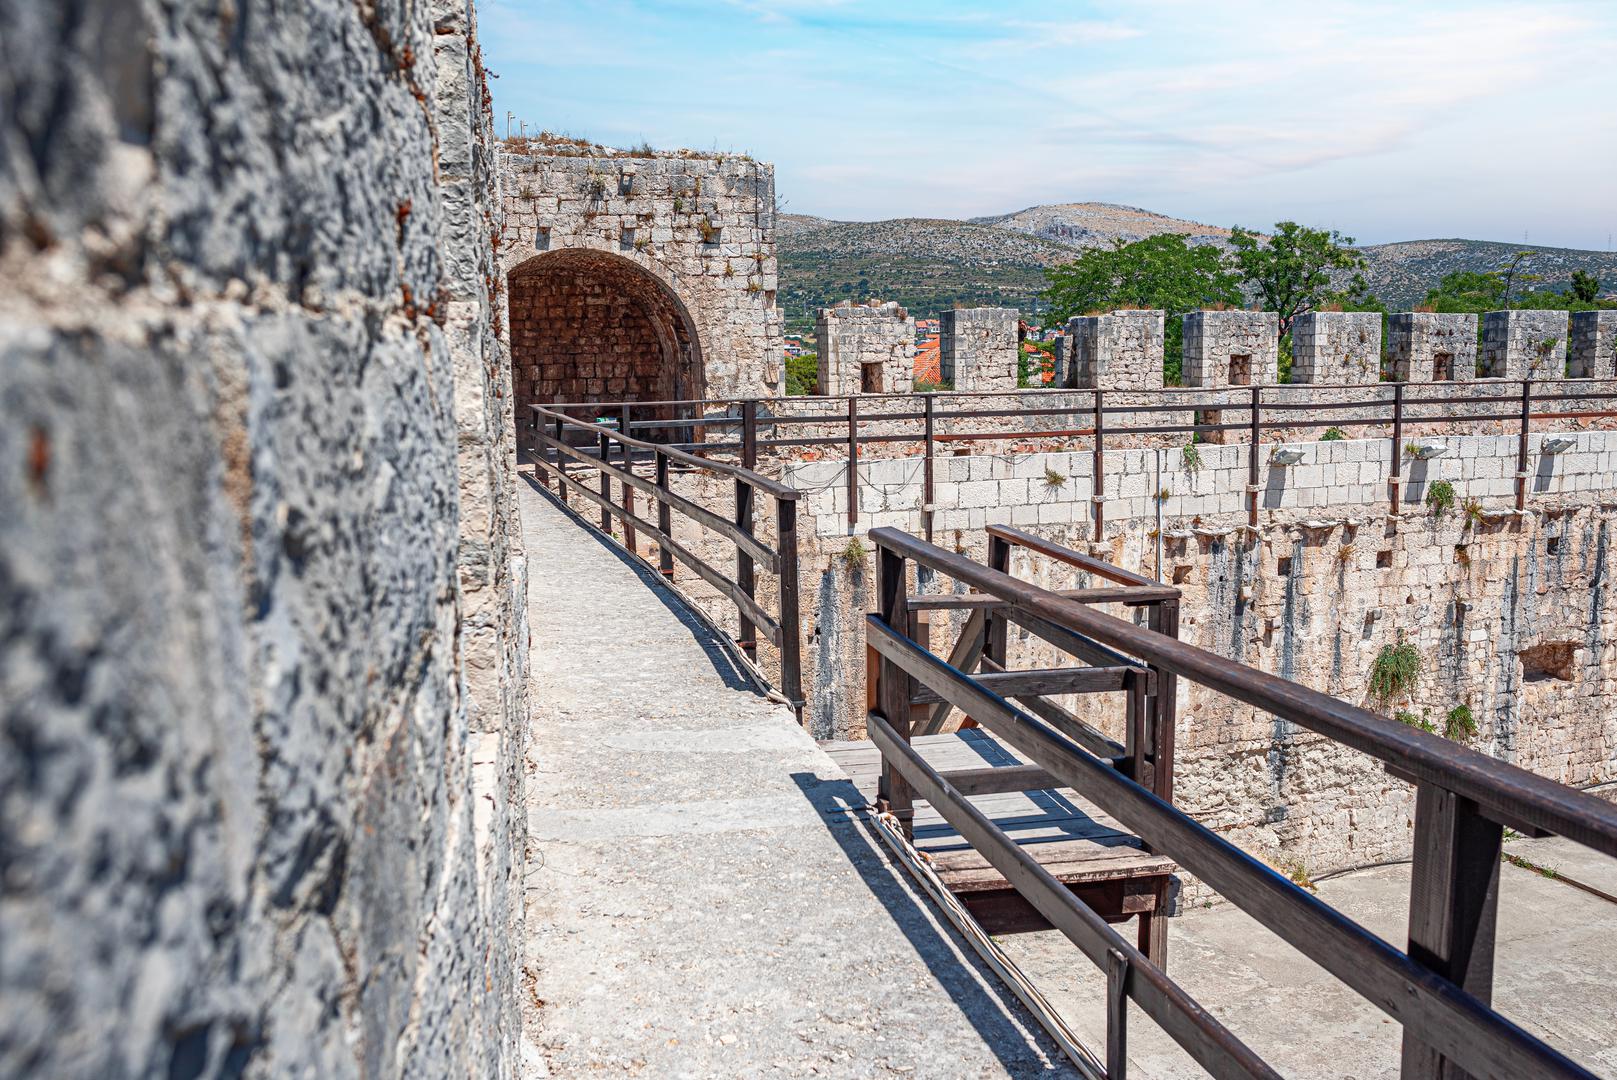 Trogirski stari grad: Zbog svog zemljopisnog položaja Trogir je oduvijek bio savršeno mjesto za život. Sa svojom prirodno zaštićenom lukom, brojnim izvorima pitke vode, plodnom zemljom u unutrašnjosti i kamenom iz lokalnih kamenoloma, Trogir je naseljen već više od 3600 godina. Ovaj mediteranski grad privlačio je mnoge velike majstore još od vremena starih Grka koji su ovdje stvorili neka od svojih najpoznatijih remek-djela. Trogir je jedinstveni primjer u povijesti europske arhitekture i grad s najvećim brojem znakova ili kamenih oznaka u Europi. Svaki ima svoje značenje. Neke od njih označavaju završetak gradnje, neke predstavljaju osobni potpis majstora, a neke su uklesane zavjetne molitve. Majstori su također klesali igre u kamenu, poput šaha, koji im je služio kao zabava tijekom stanke u izgradnji.